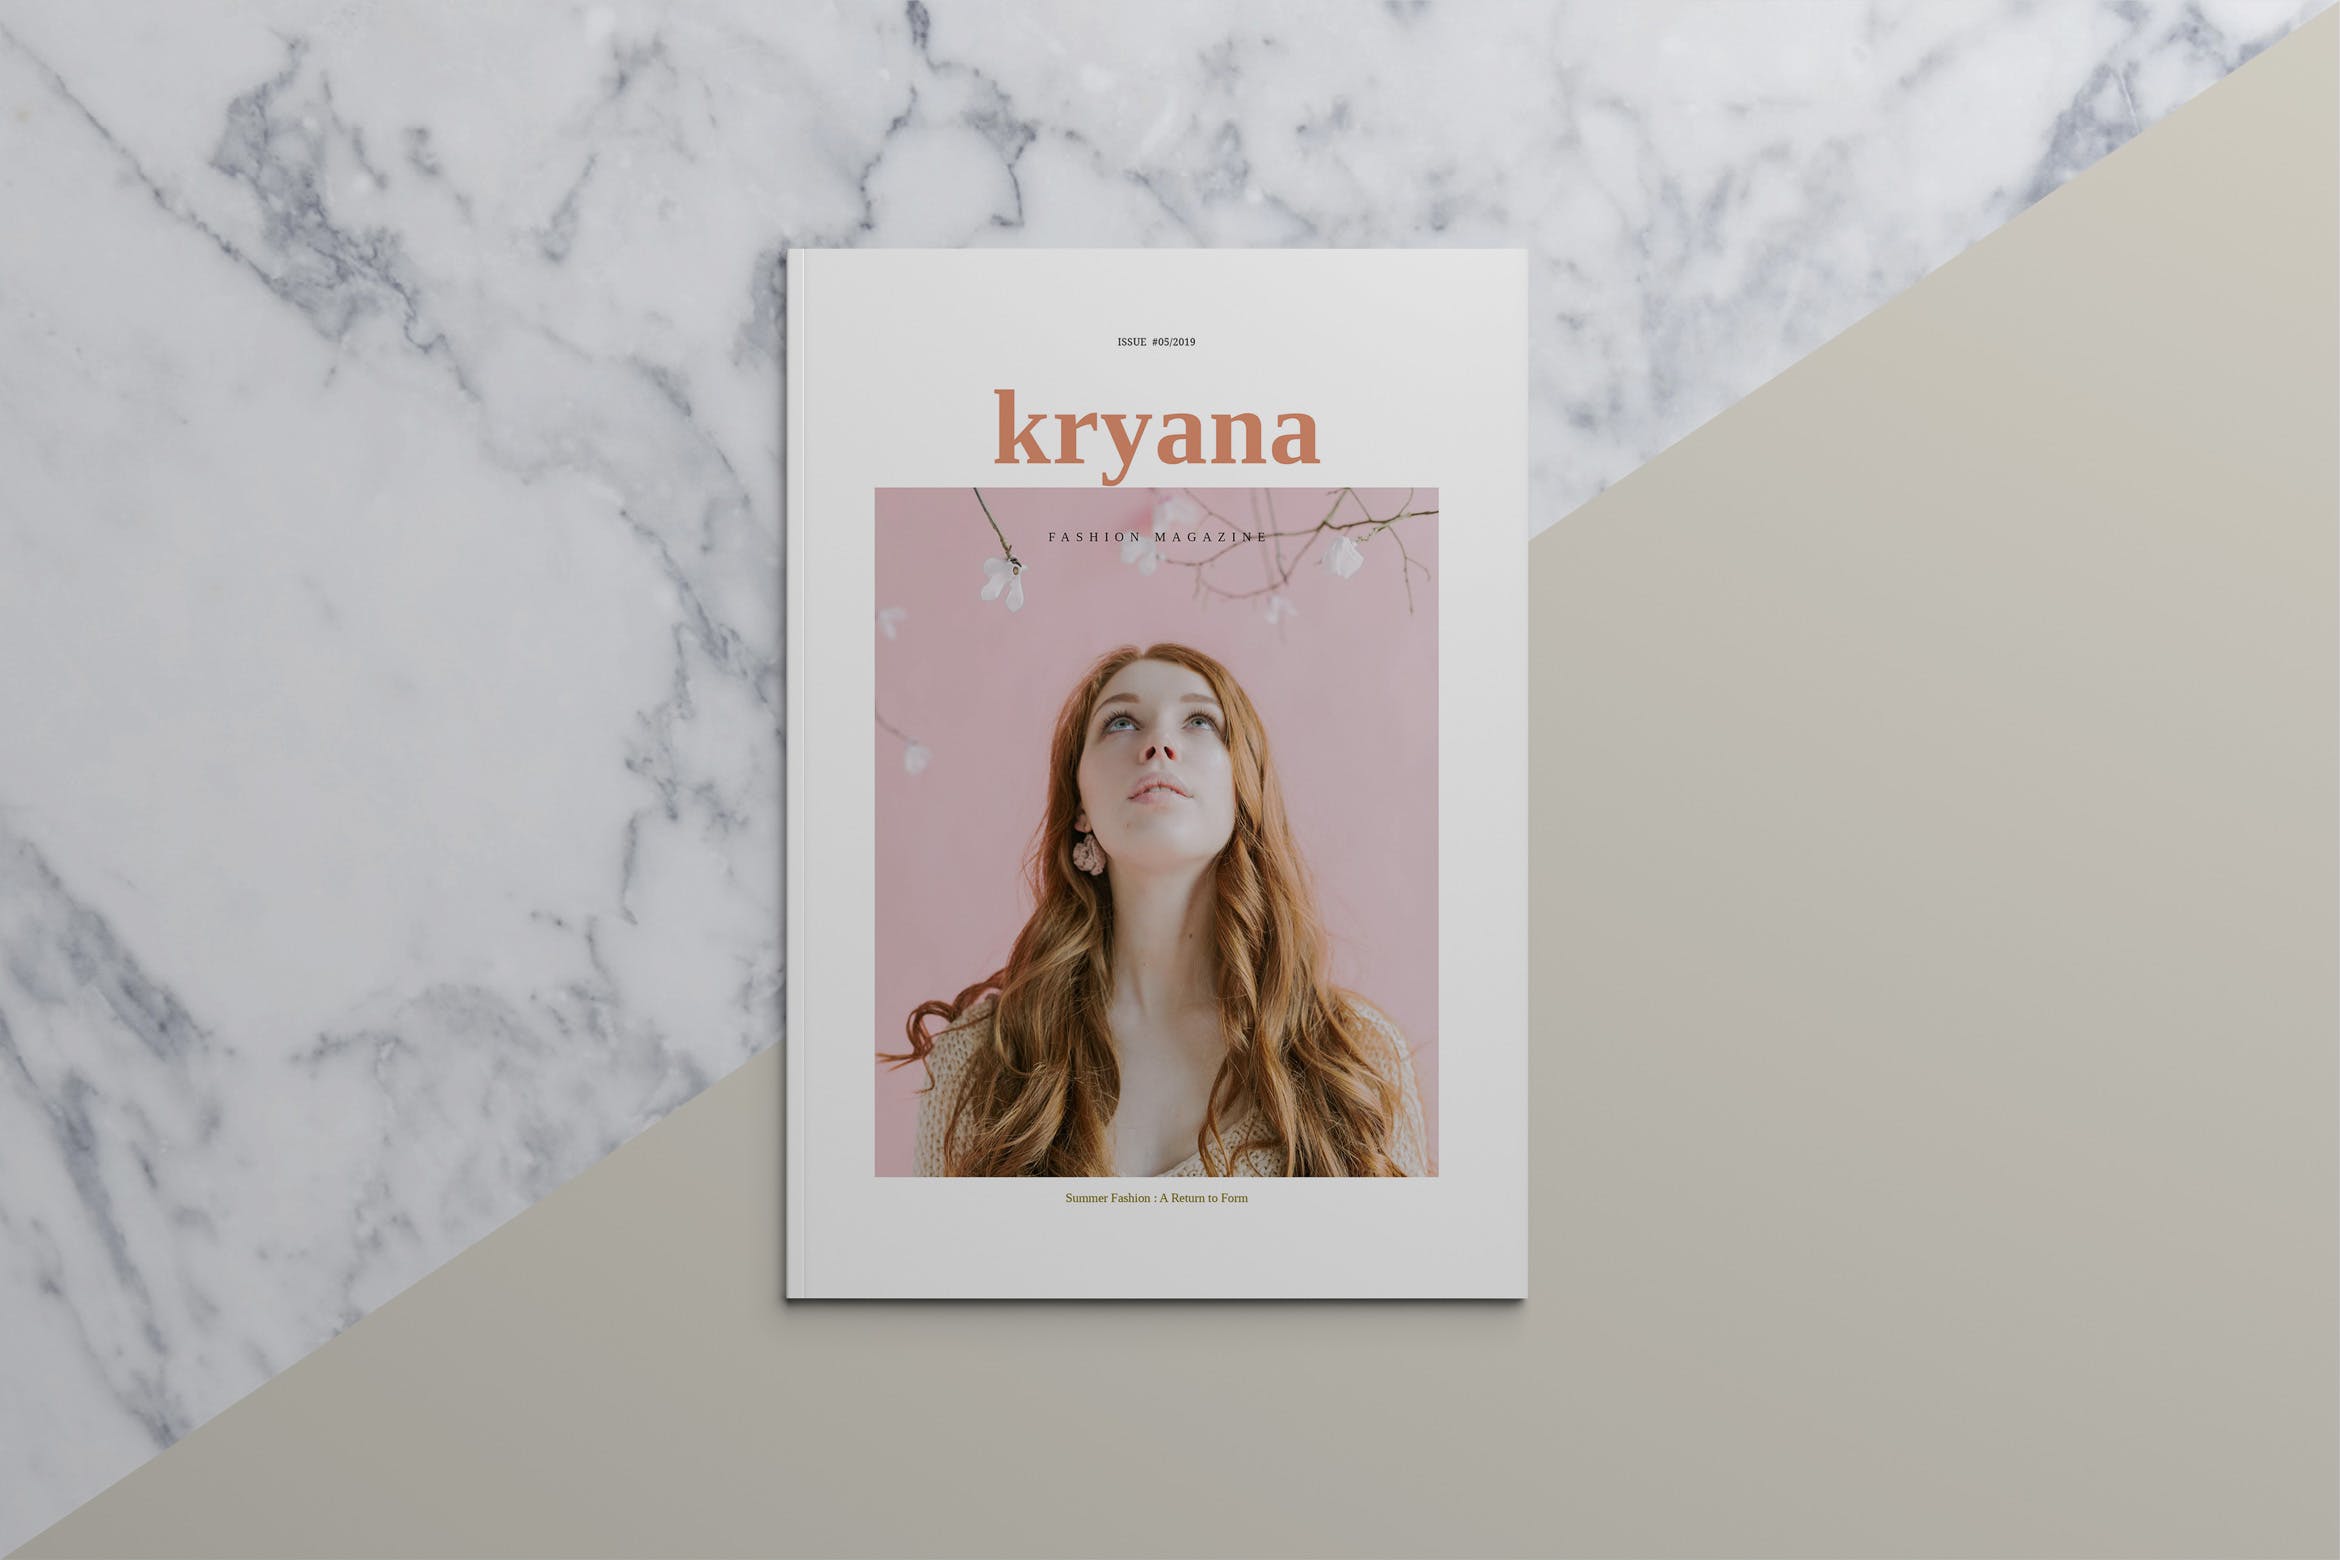 时尚主义北欧风格第一素材精选杂志设计模板 KRYANA – Fashion Magazine插图